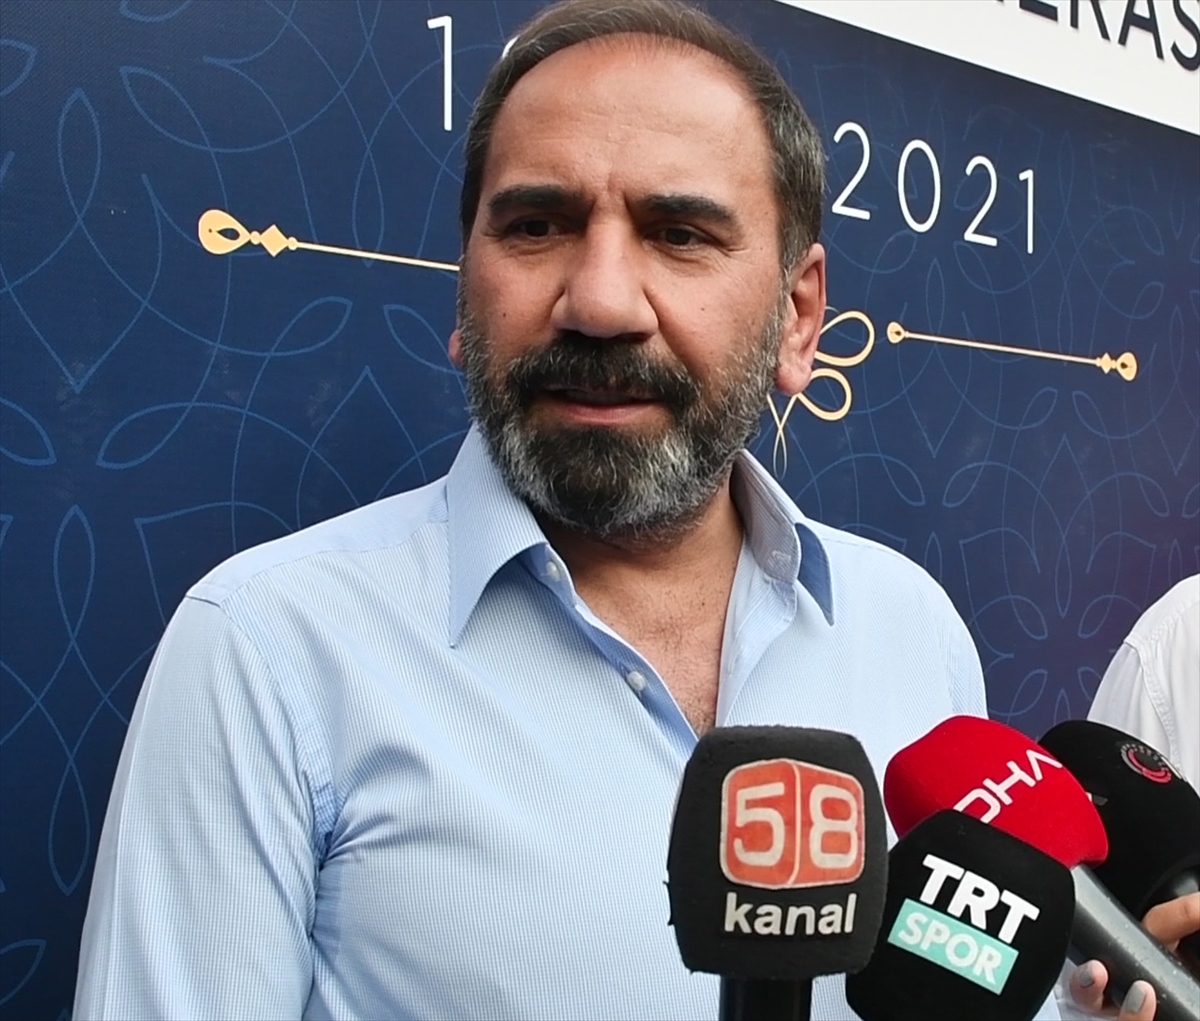 Sivasspor bu sezon yeni transferlerle üç kulvarda da iddialı